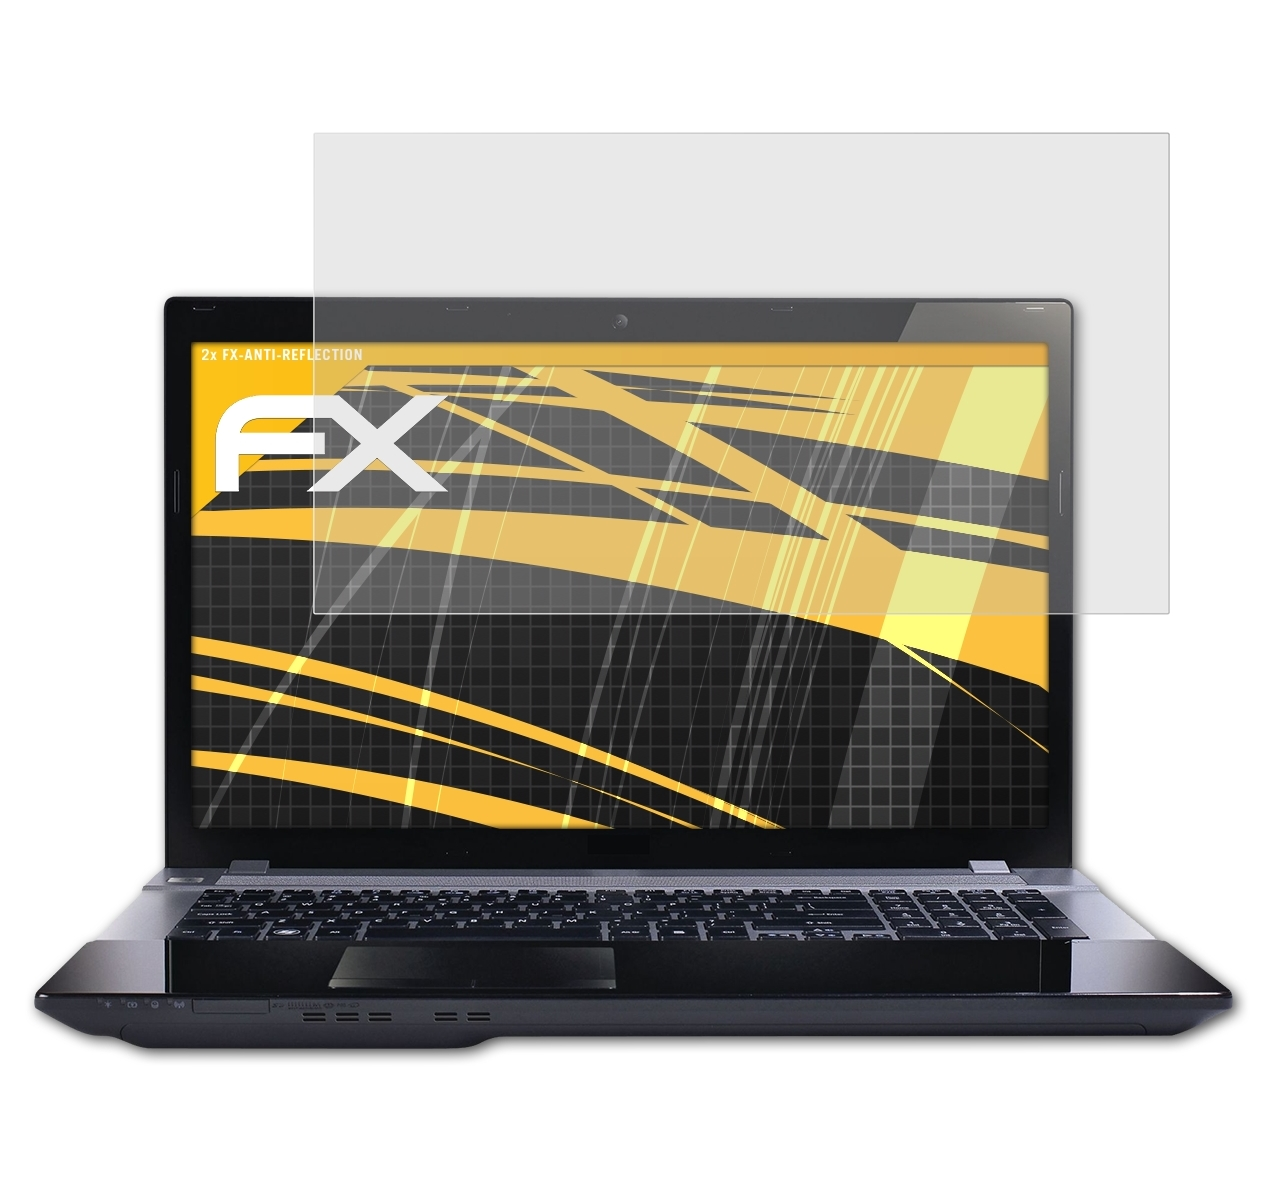 Aspire V3-771G) ATFOLIX Displayschutz(für FX-Antireflex Acer 2x